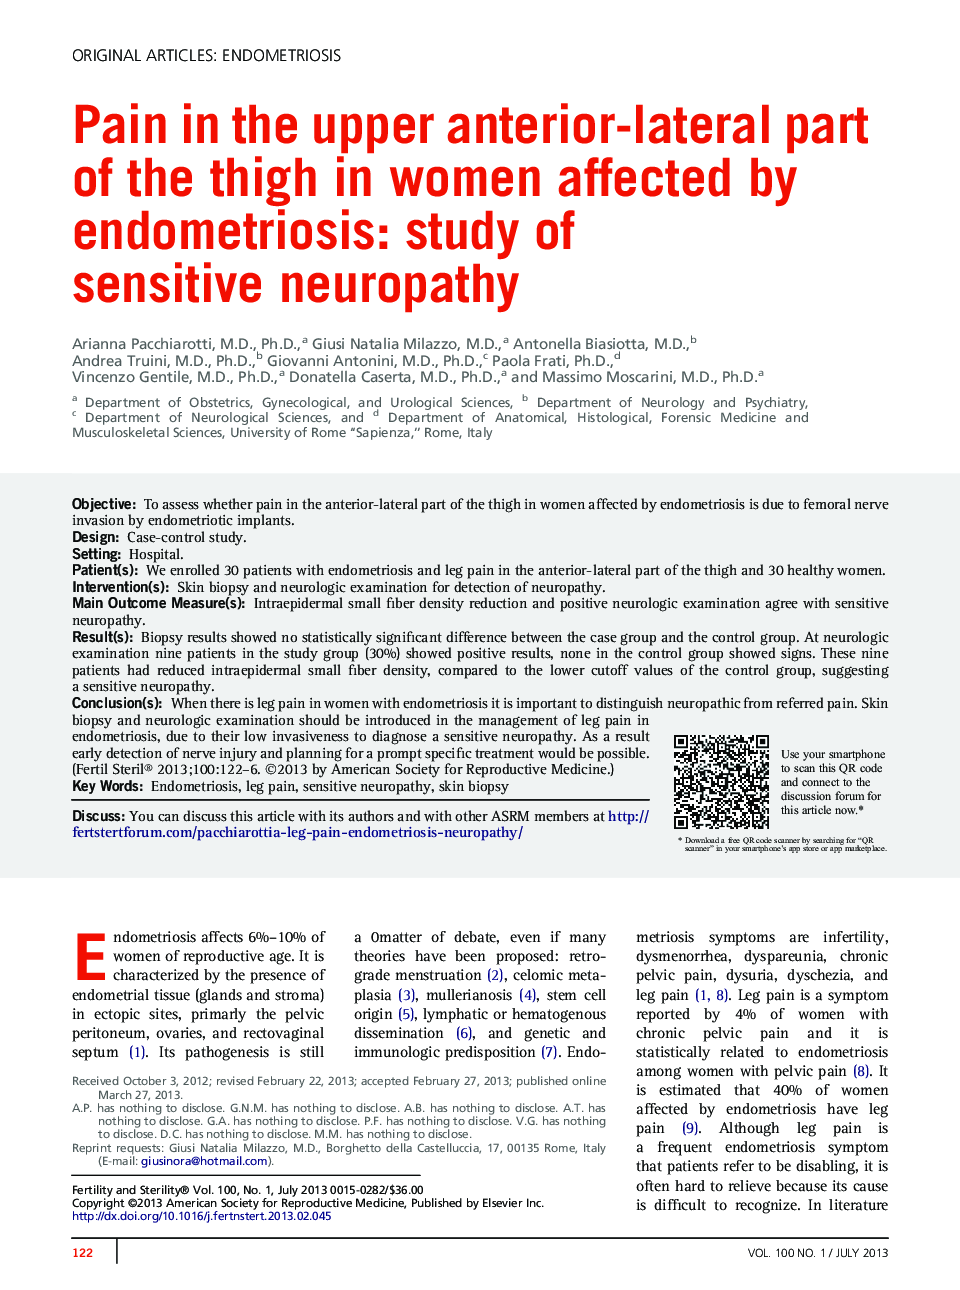 درد در قسمت قدامی بالای ران در زنان مبتلا به آندومتریوز: مطالعه نوروپاتی حساس 